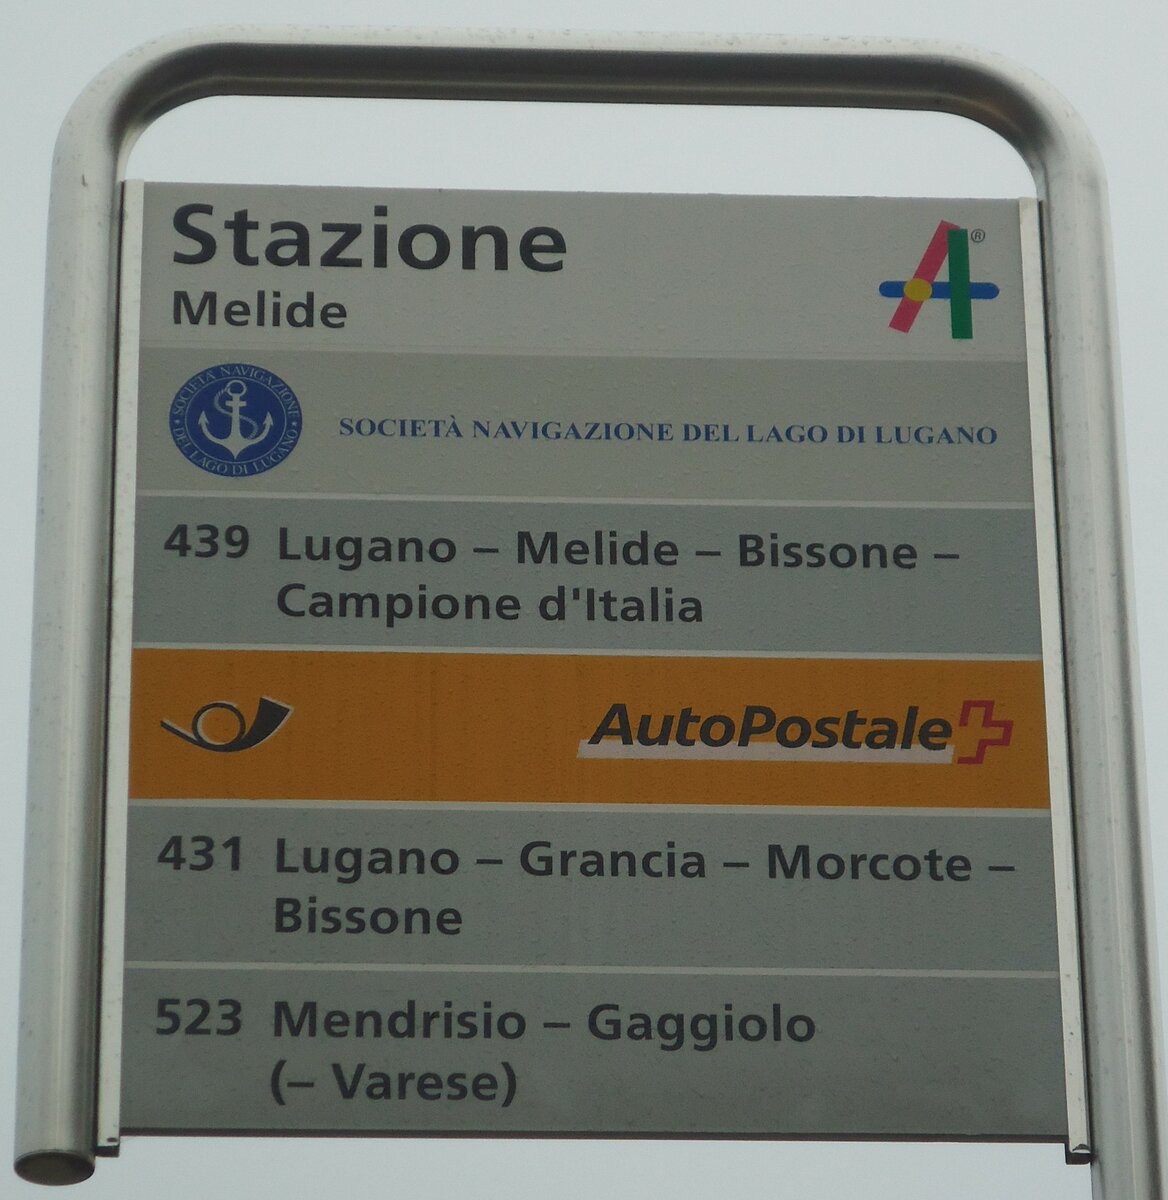 (147'769) - SOCIET NAVIGAZIONE DEL LAGO DI LUGANOPostAuto-Haltestellenschild - Melide, Stazione - am 6. November 2013